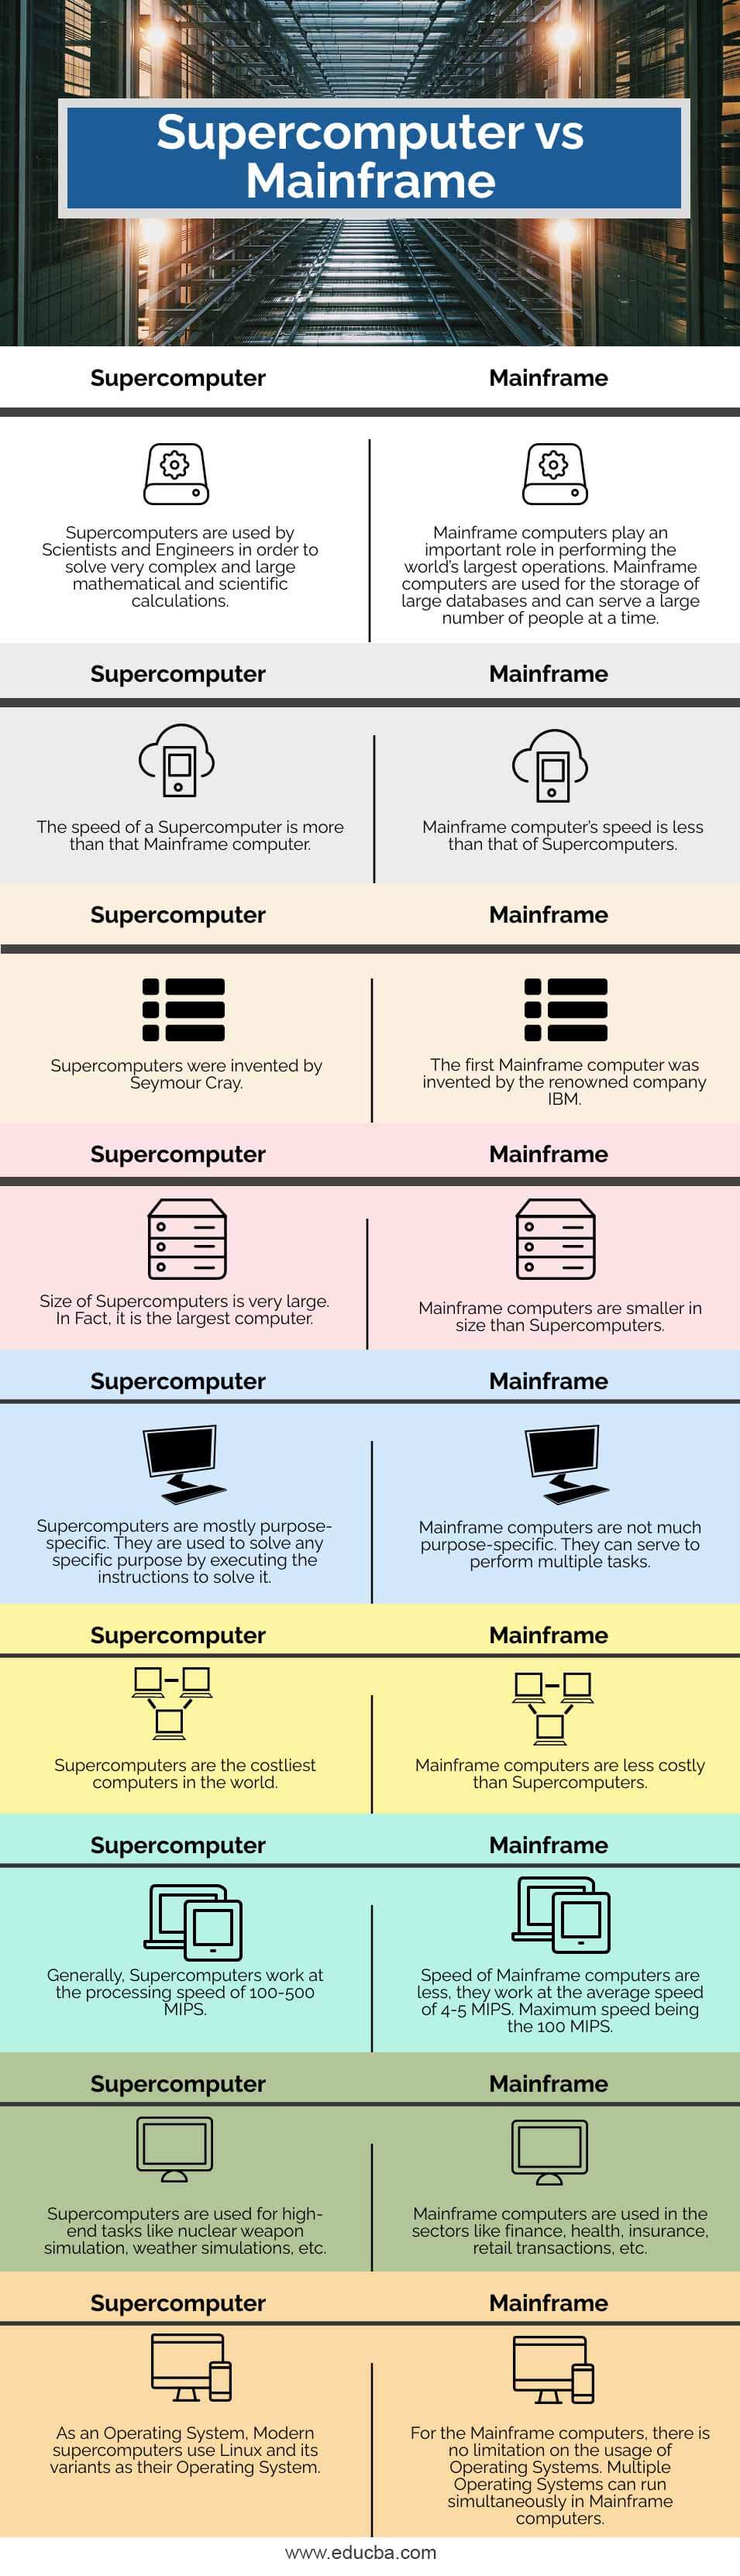 Supercomputer vs Mainframe